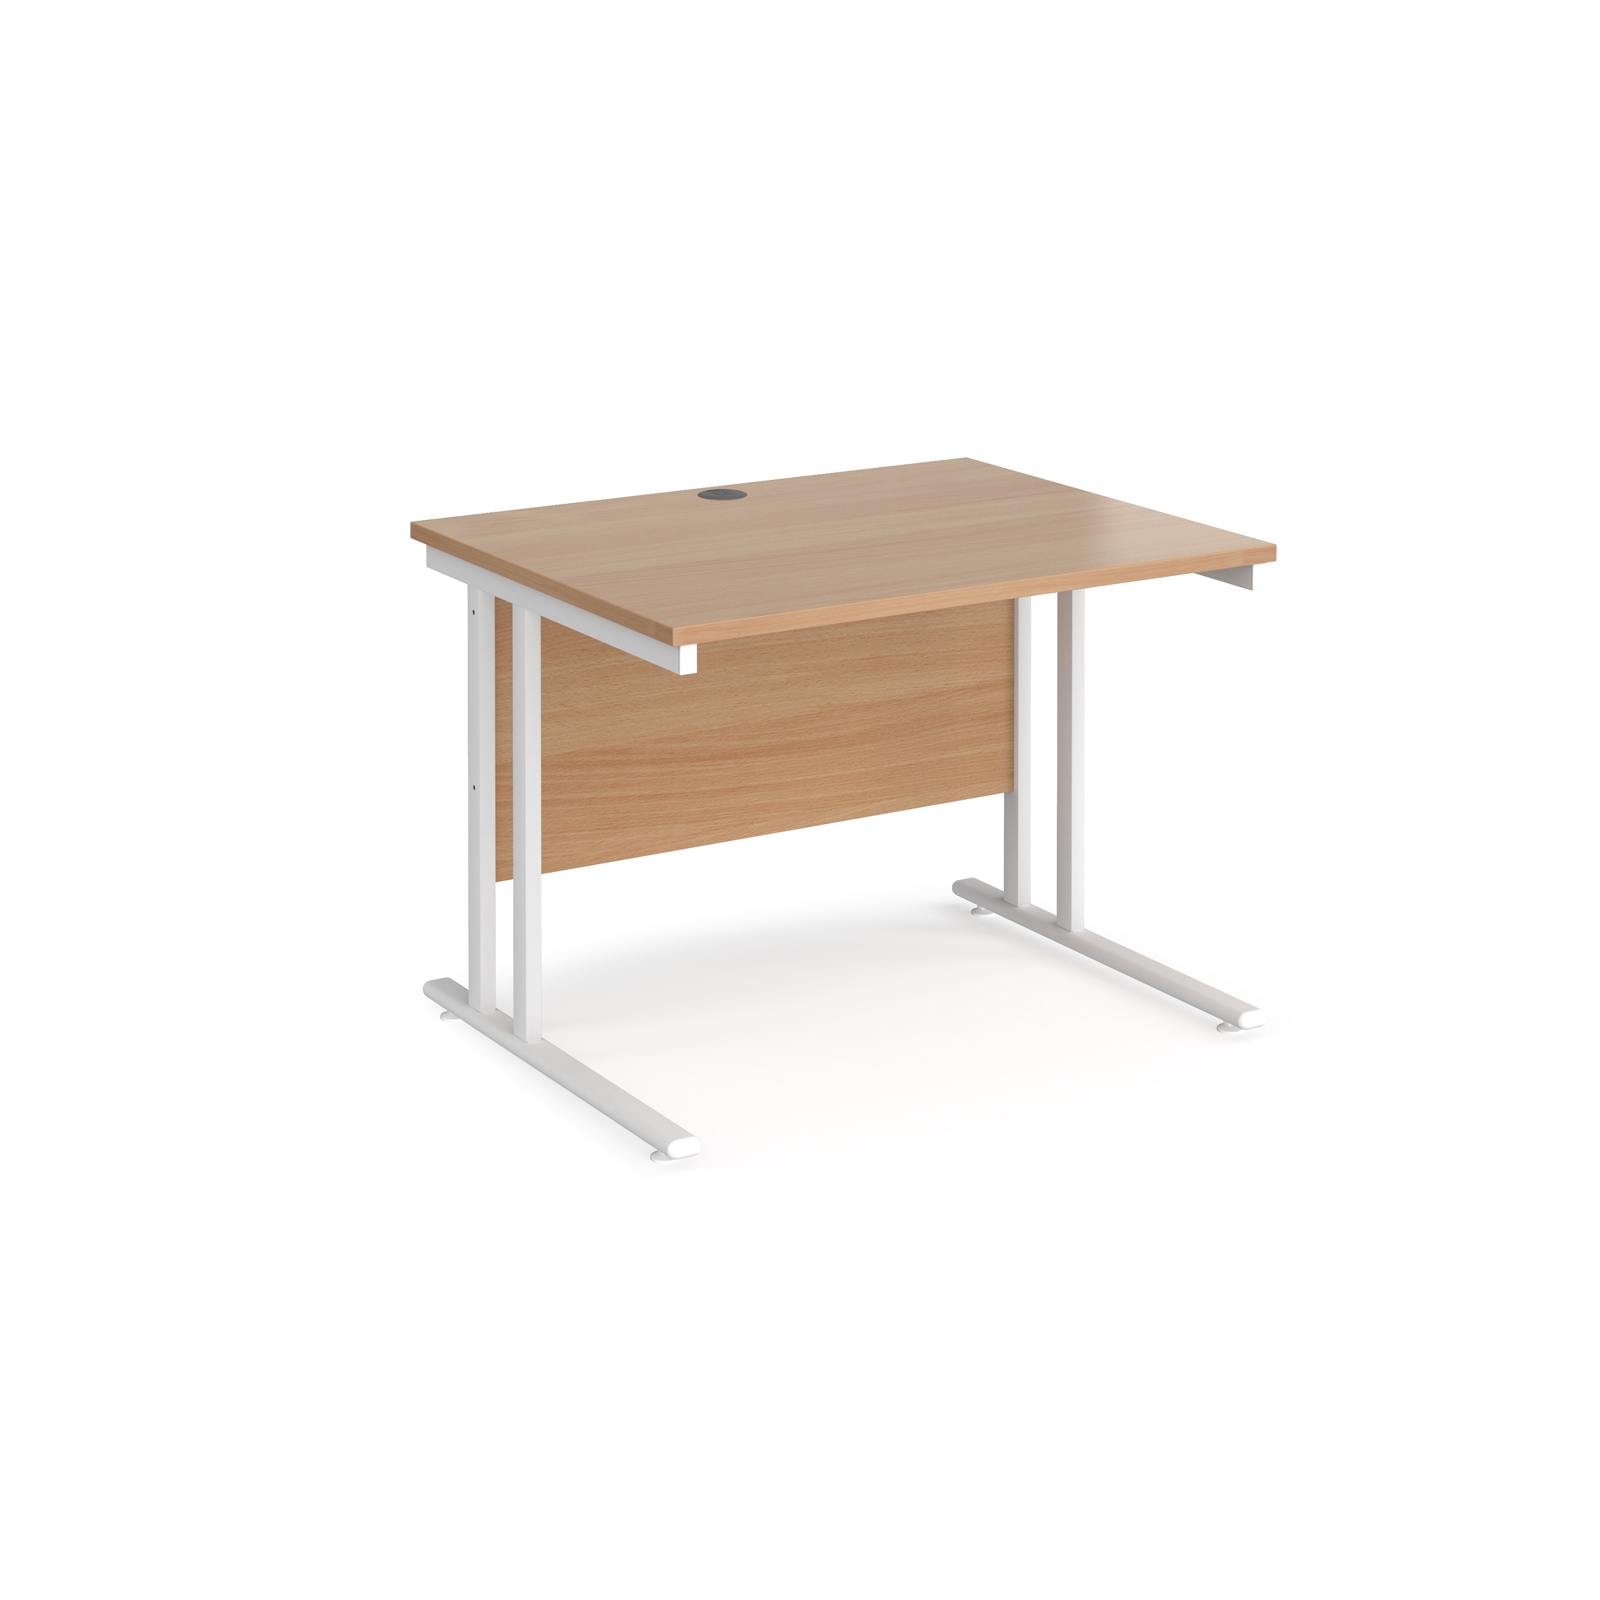 Rectangular Desks Maestro 25 straight desk 1000mm x 800mm - white cantilever leg frame, beech top